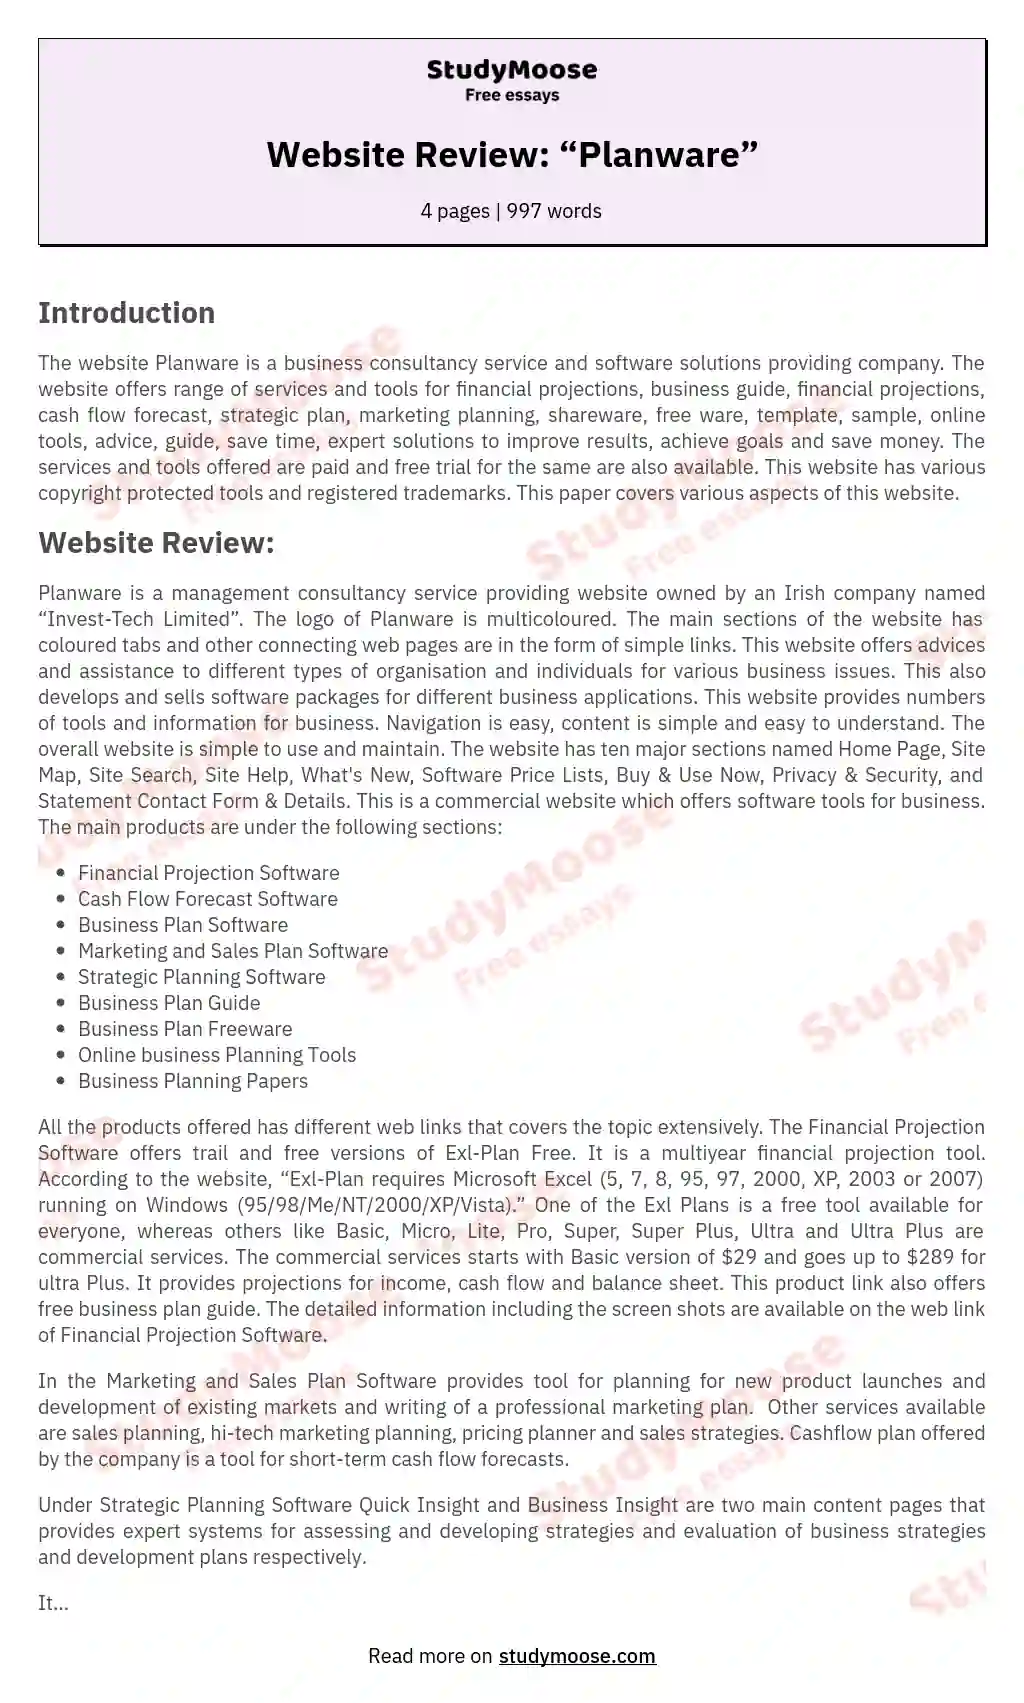 Website Review: “Planware” essay